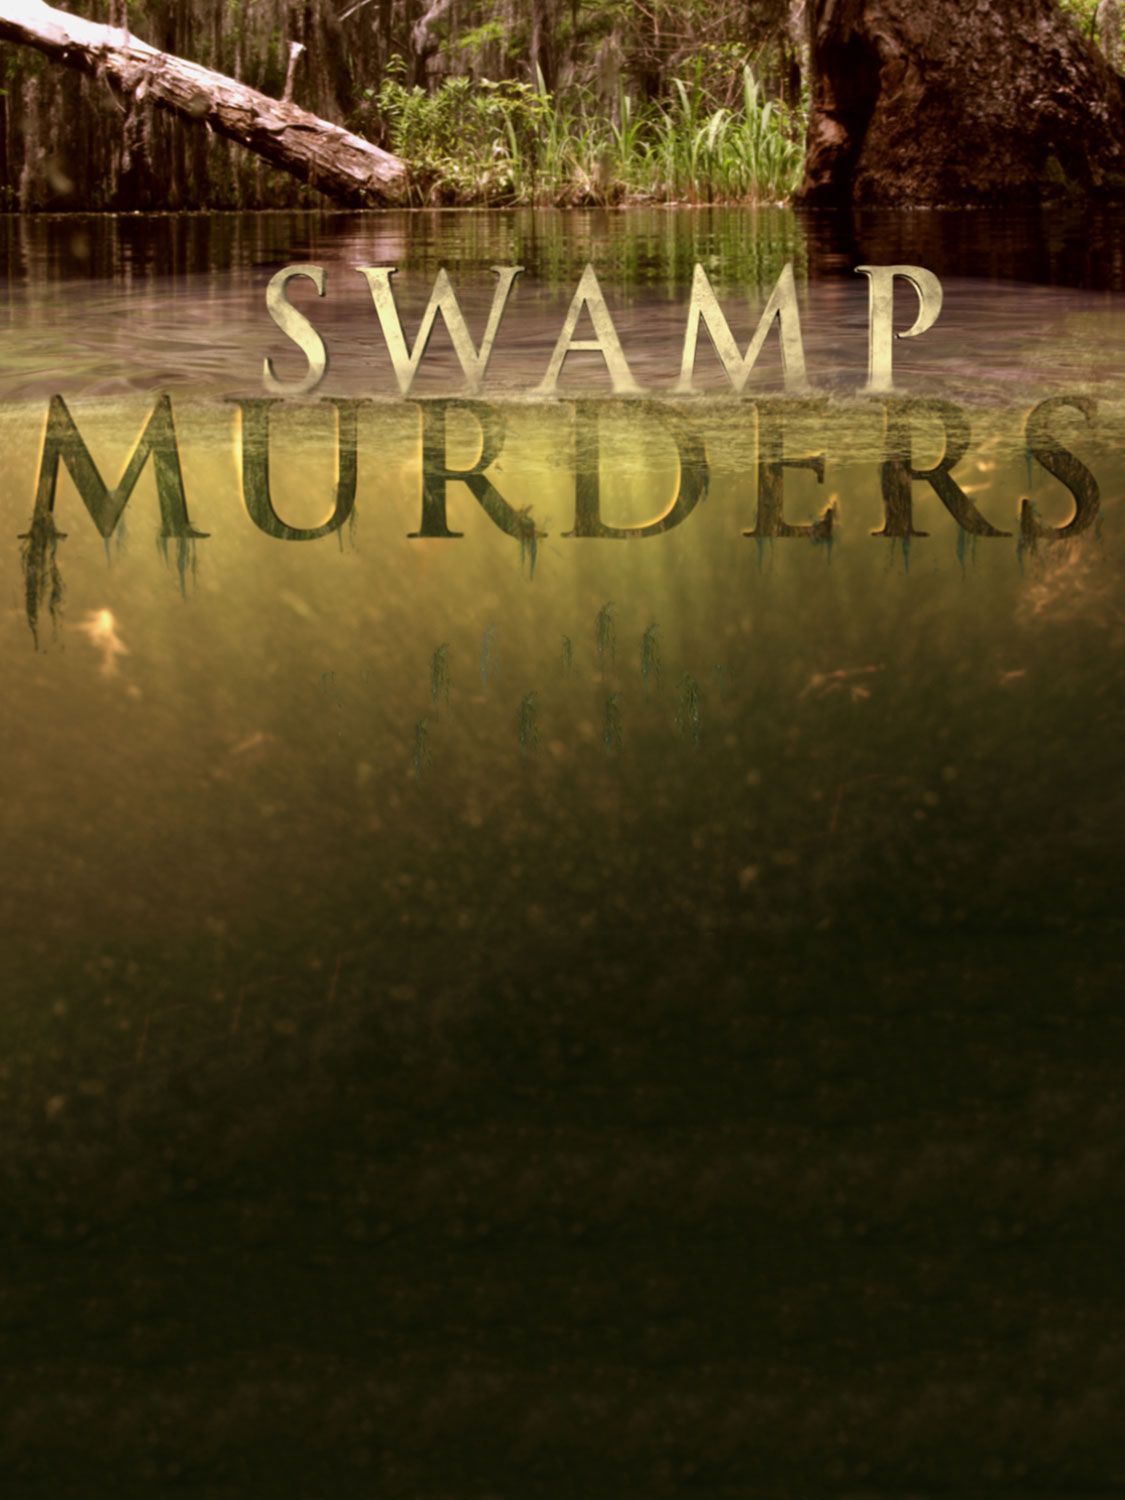 Swamp Murders - Season 5